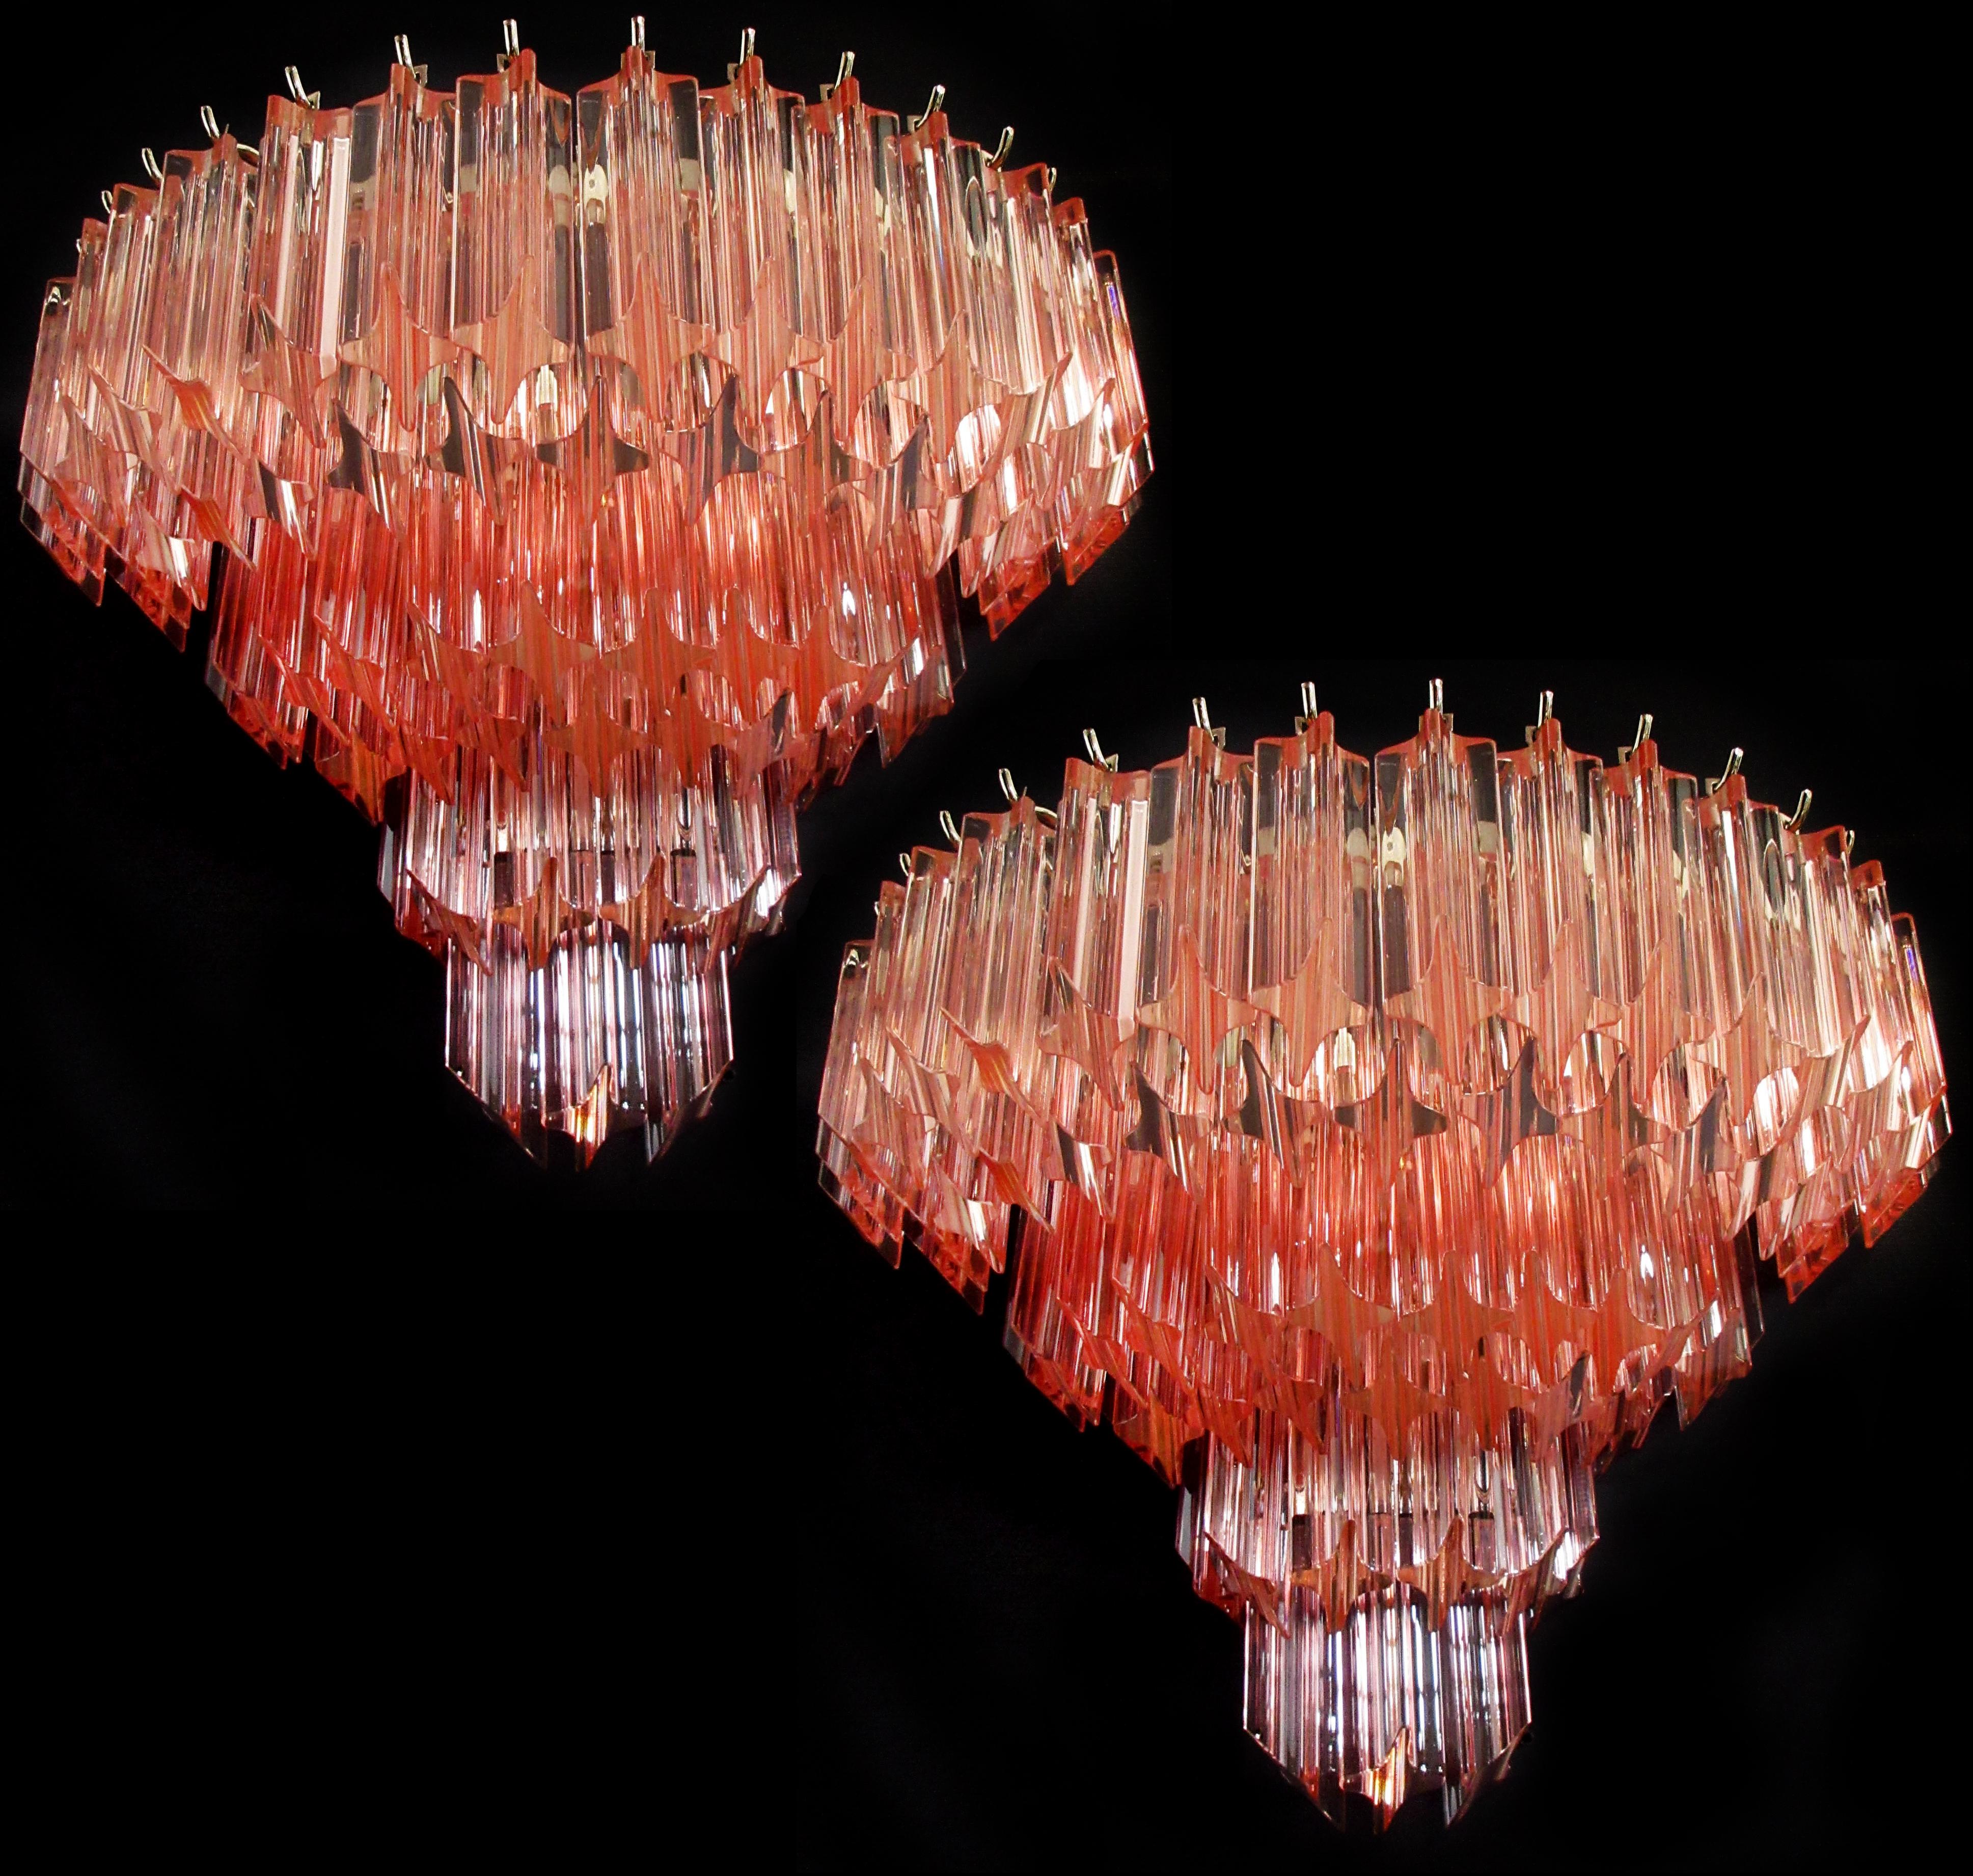 Fantastisches Paar von Vintage Murano Wandleuchte von 63 Murano-Kristall Prisma (quadriedri) für jede Anwendung in einem verchromten Metallrahmen gemacht. Die Gläser sind rosafarben.
Zeitraum: 1980s
Abmessungen: 13,60 Zoll Höhe (35 cm); 16,60 Zoll